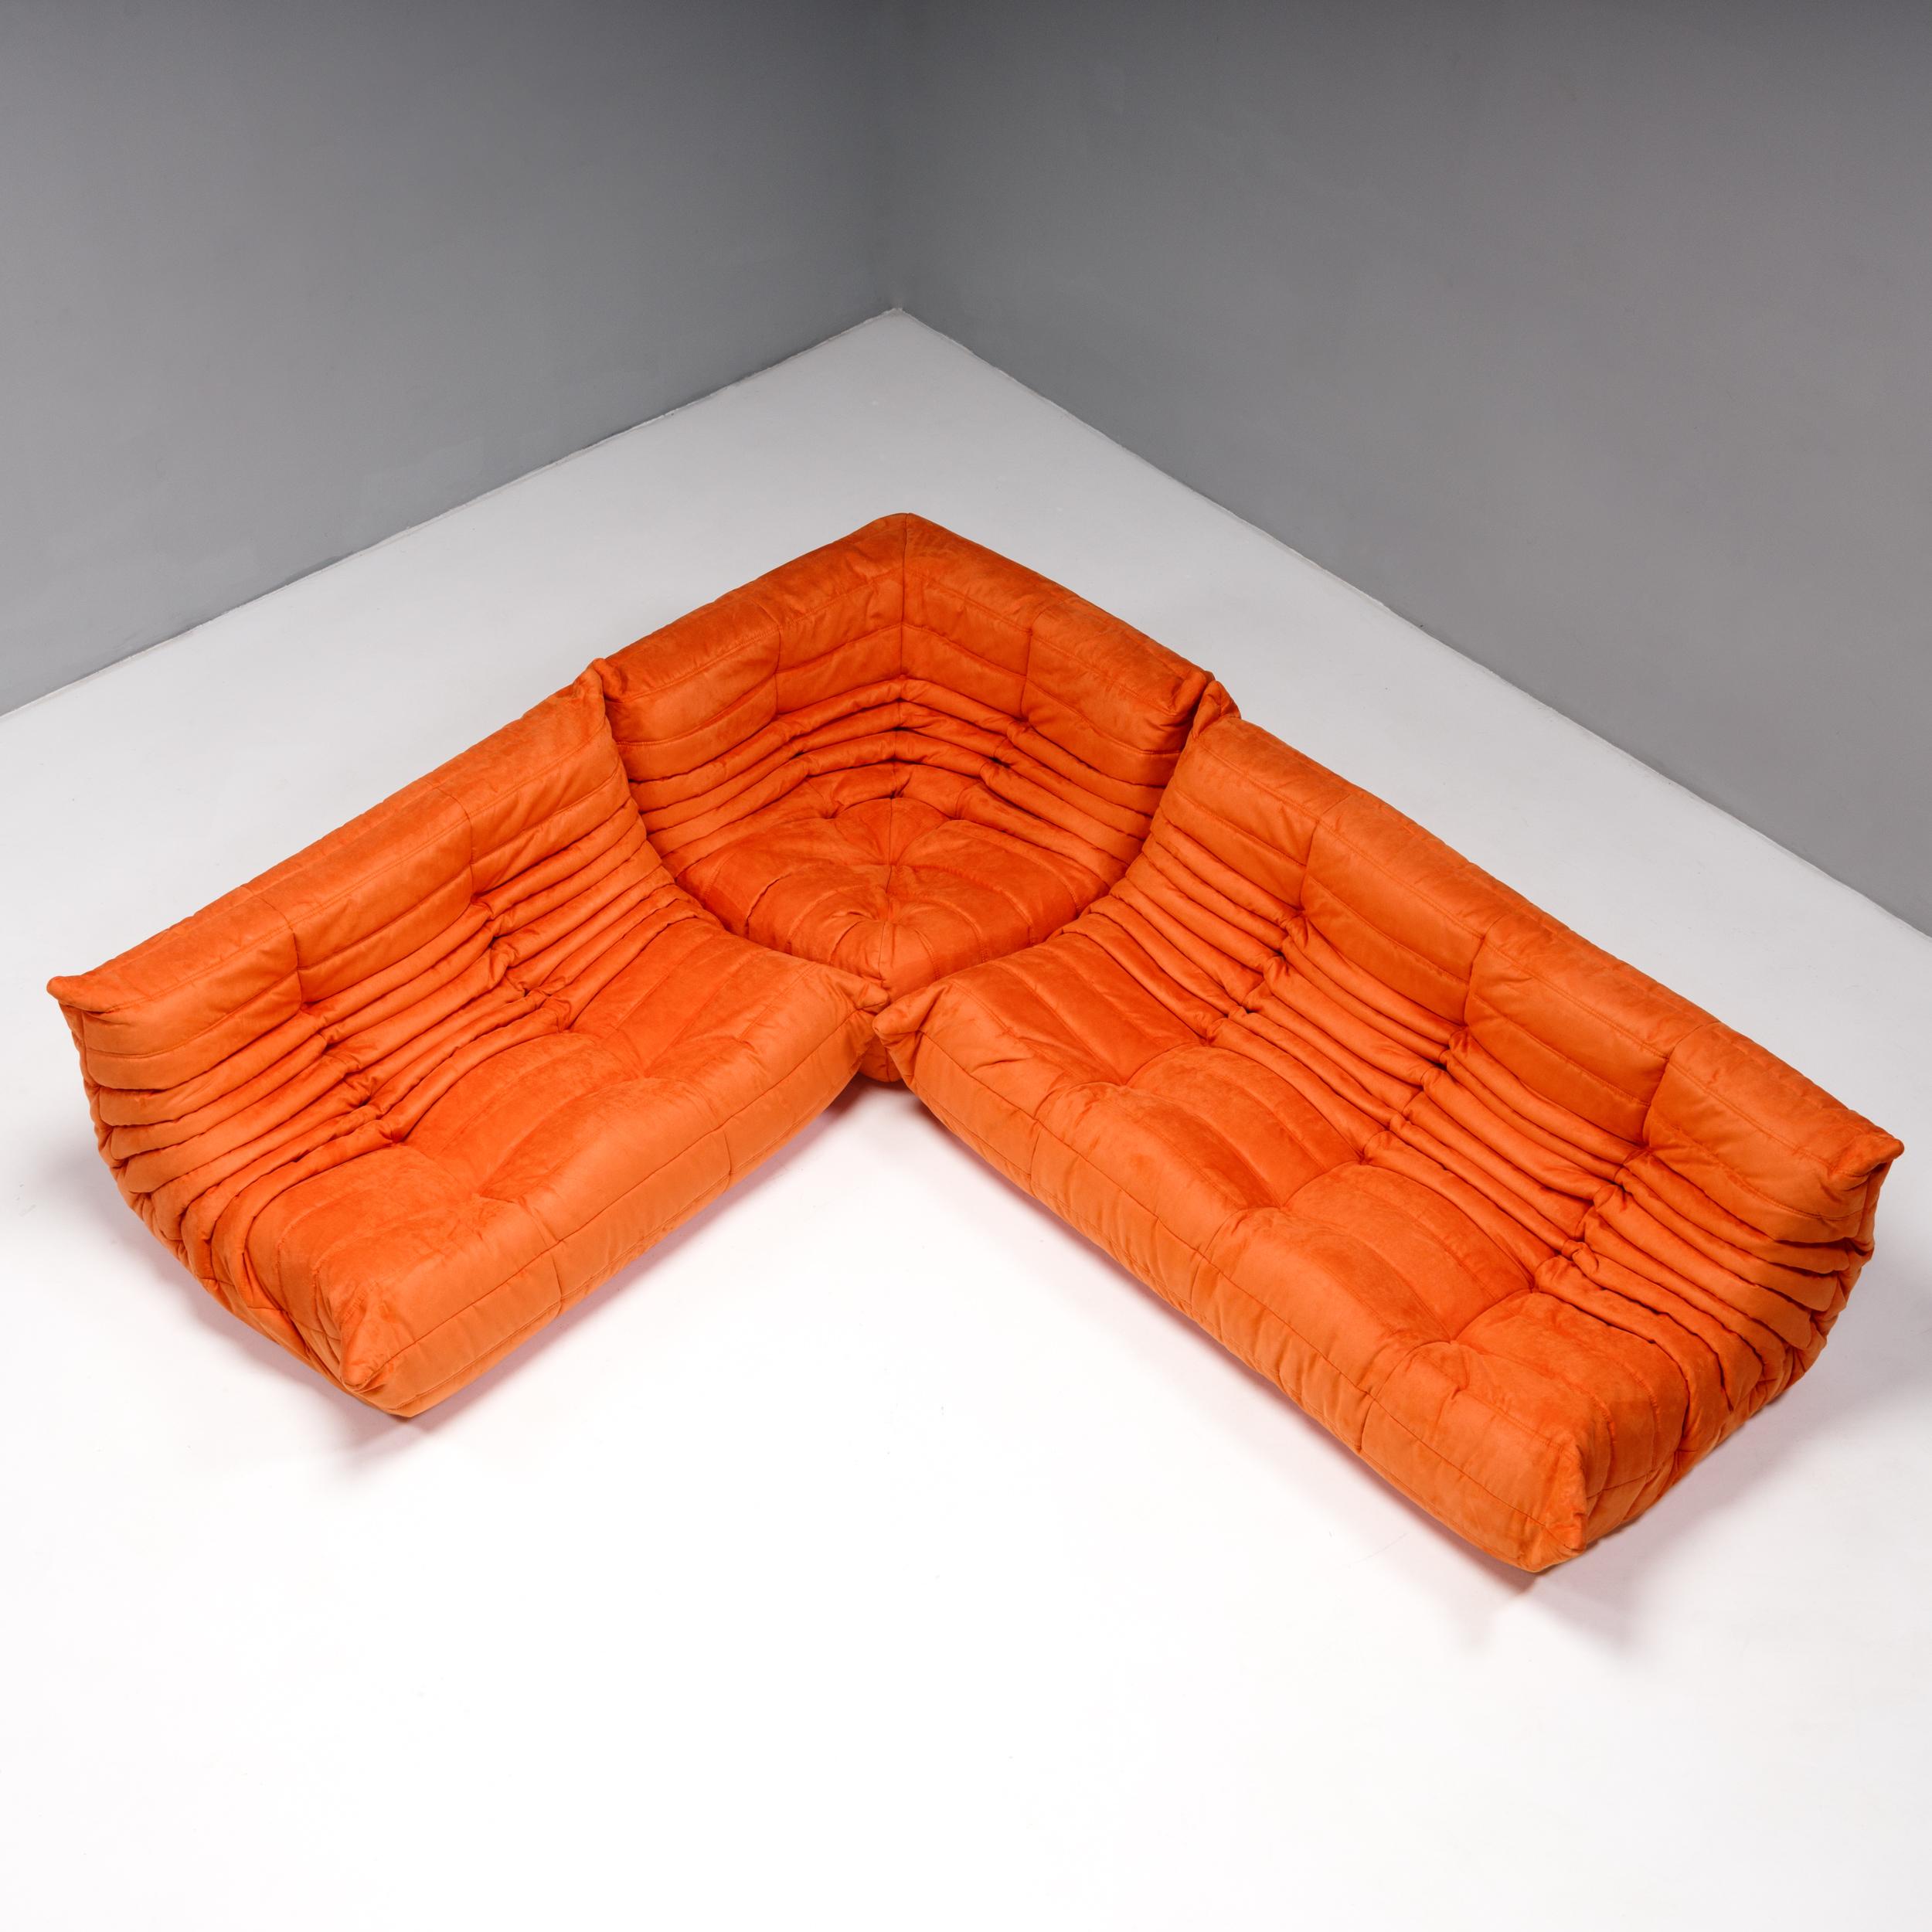 Das ikonische Sofa Togo, ursprünglich 1973 von Michel Ducaroy für Ligne Roset entworfen, ist ein Designklassiker geworden.

Dieses dreiteilige modulare Set ist unglaublich vielseitig und kann zu einem großen Ecksofa konfiguriert oder für eine